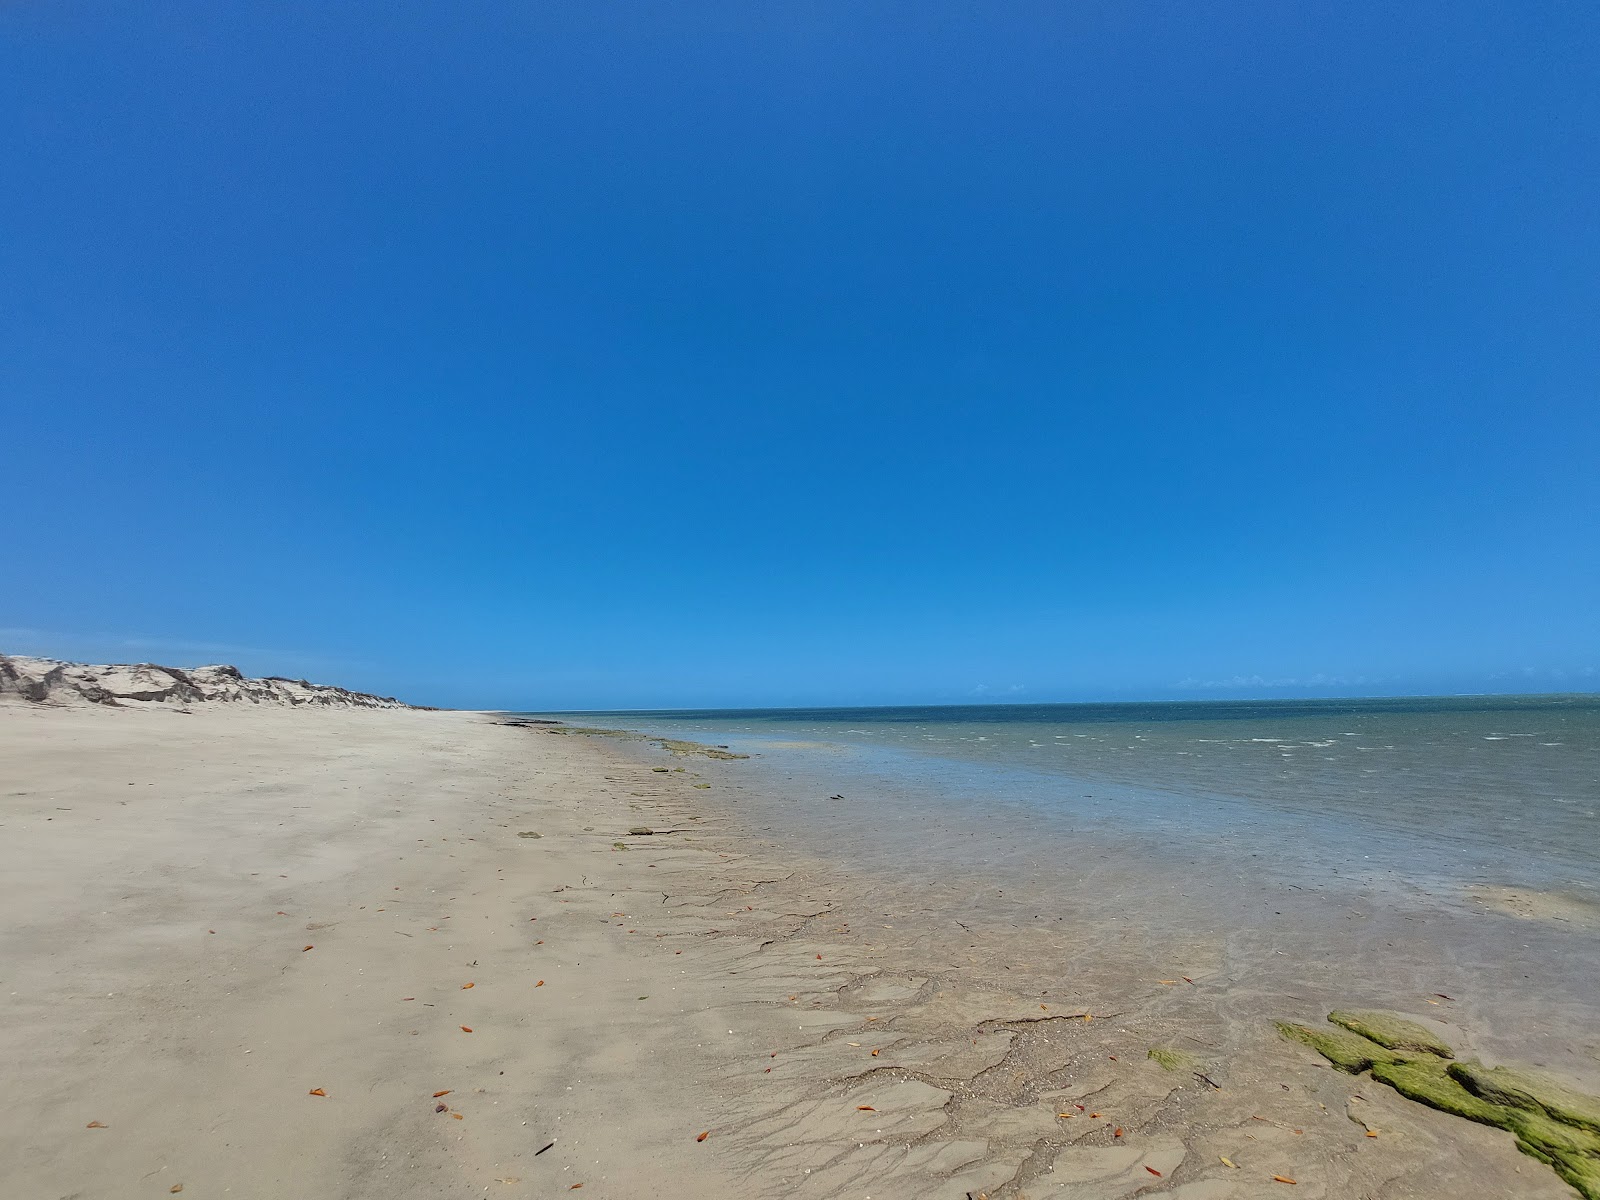 Fotografie cu Plaja Noua Caraibe cu o suprafață de nisip strălucitor